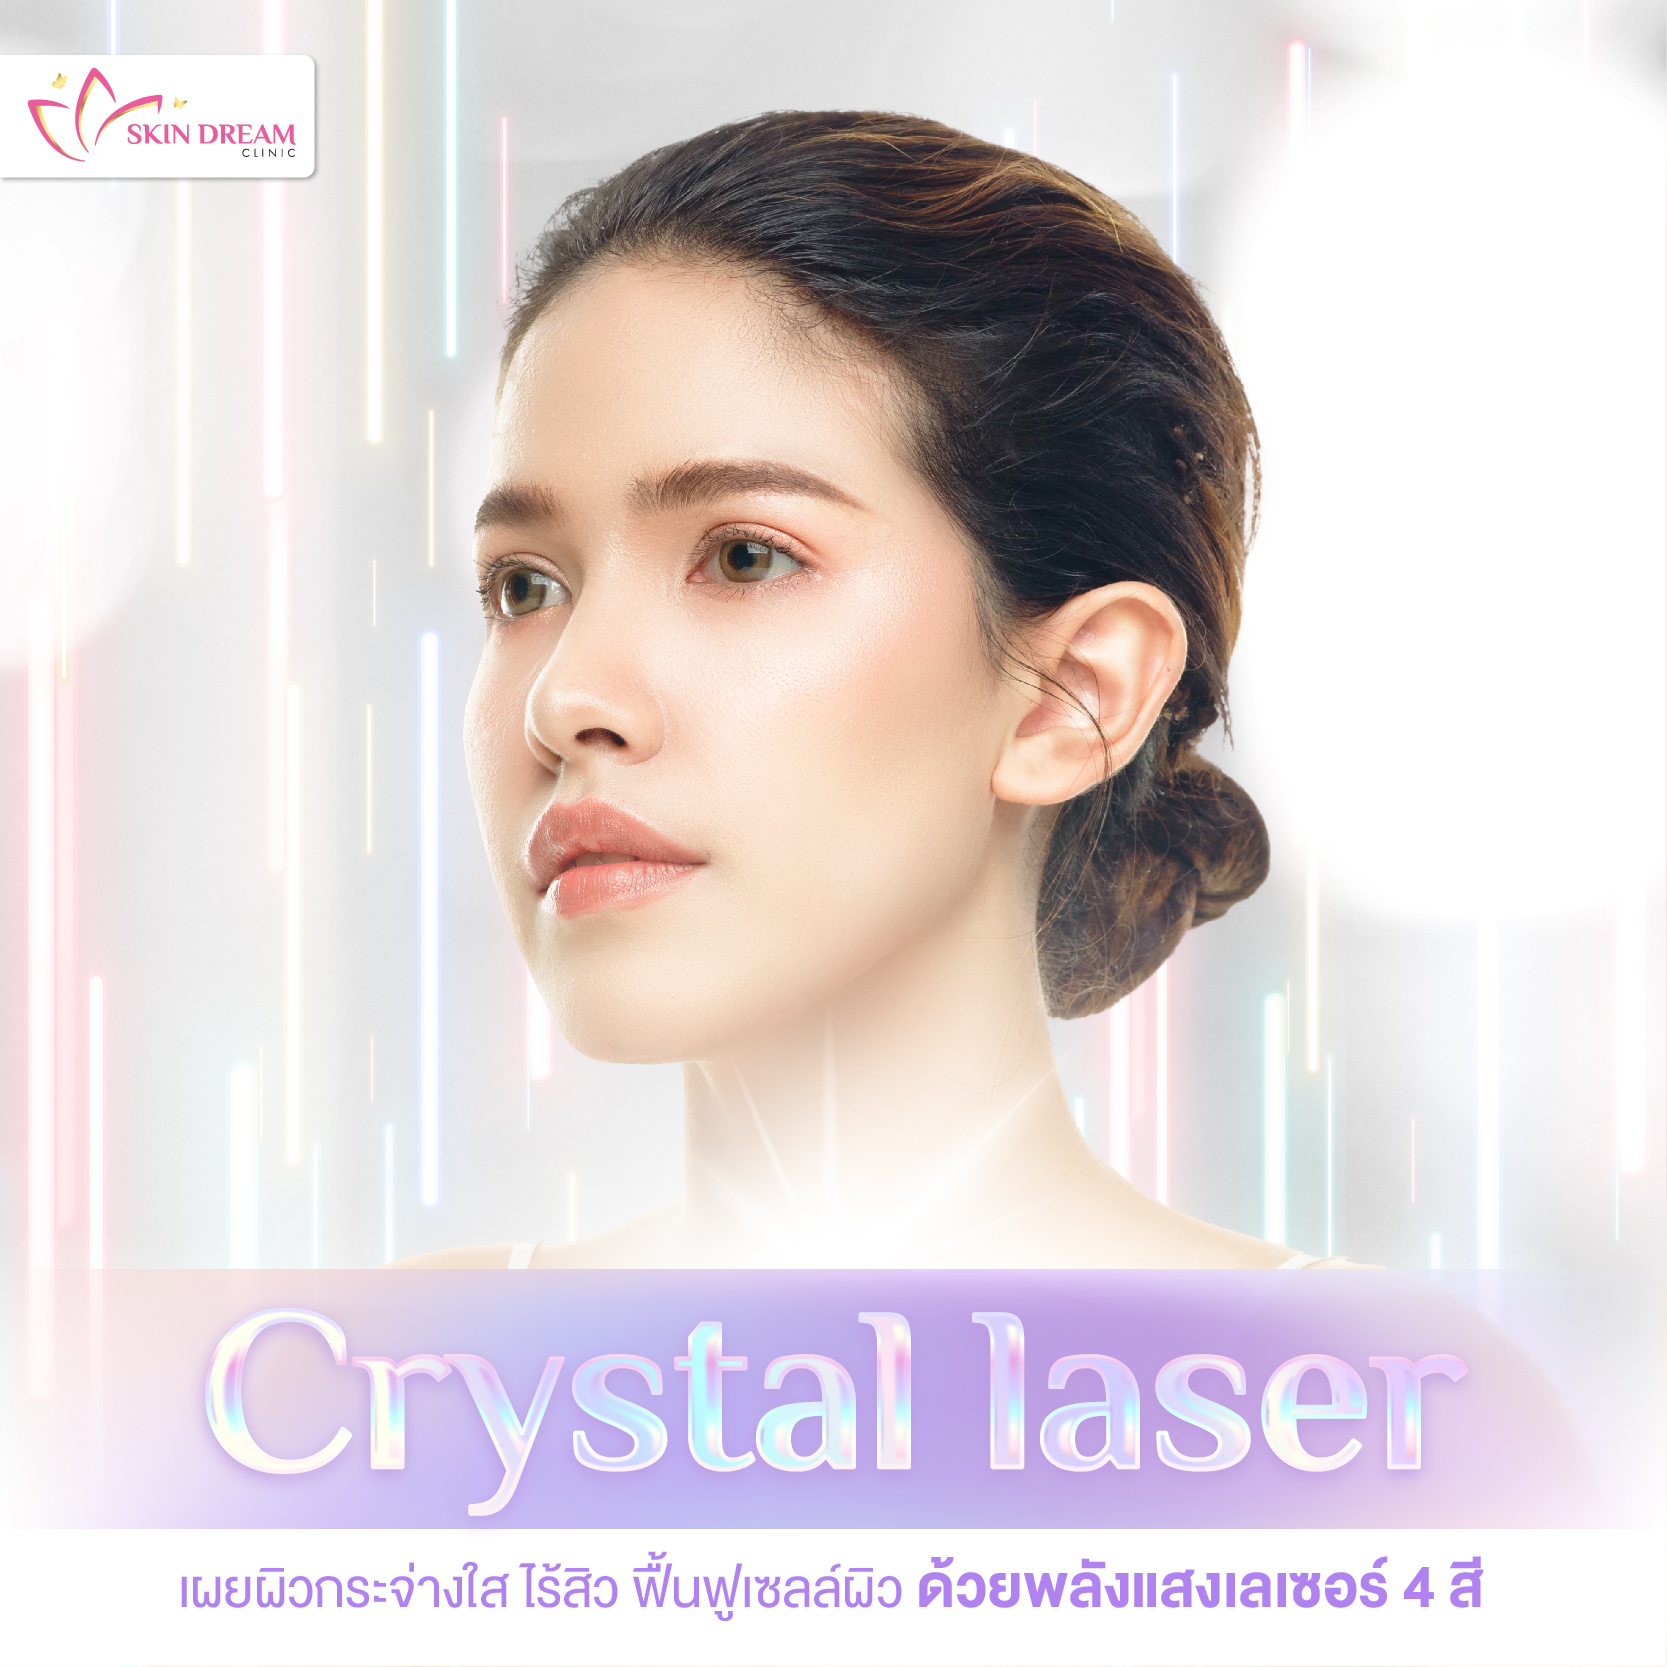 Crystal laser